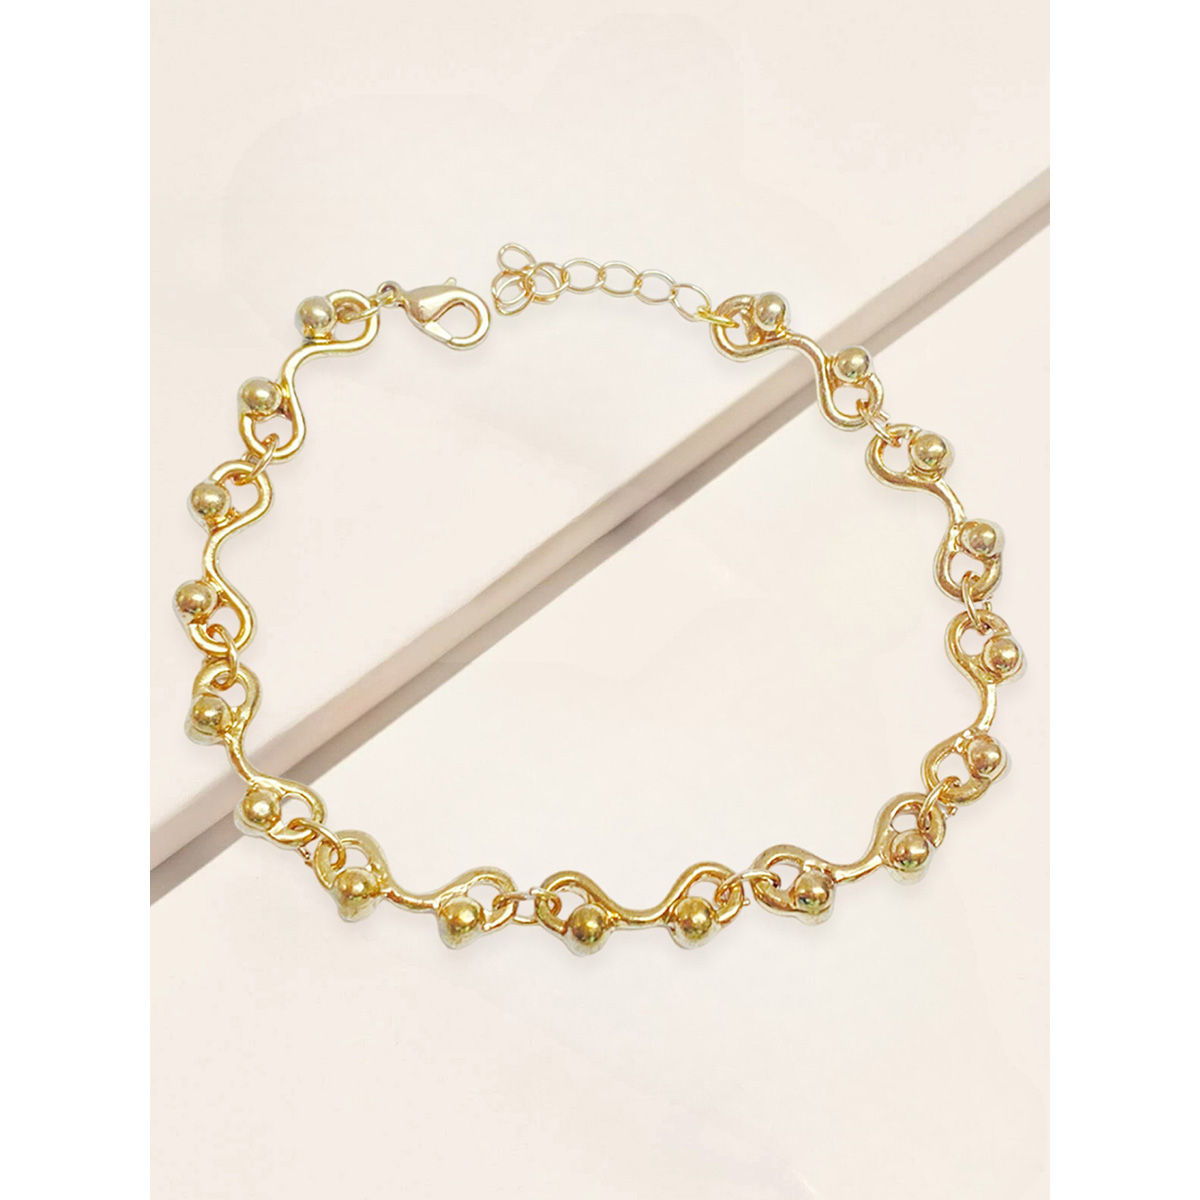 Buy GoldPlated Bracelets  Bangles for Women by TALISMAN Online  Ajiocom